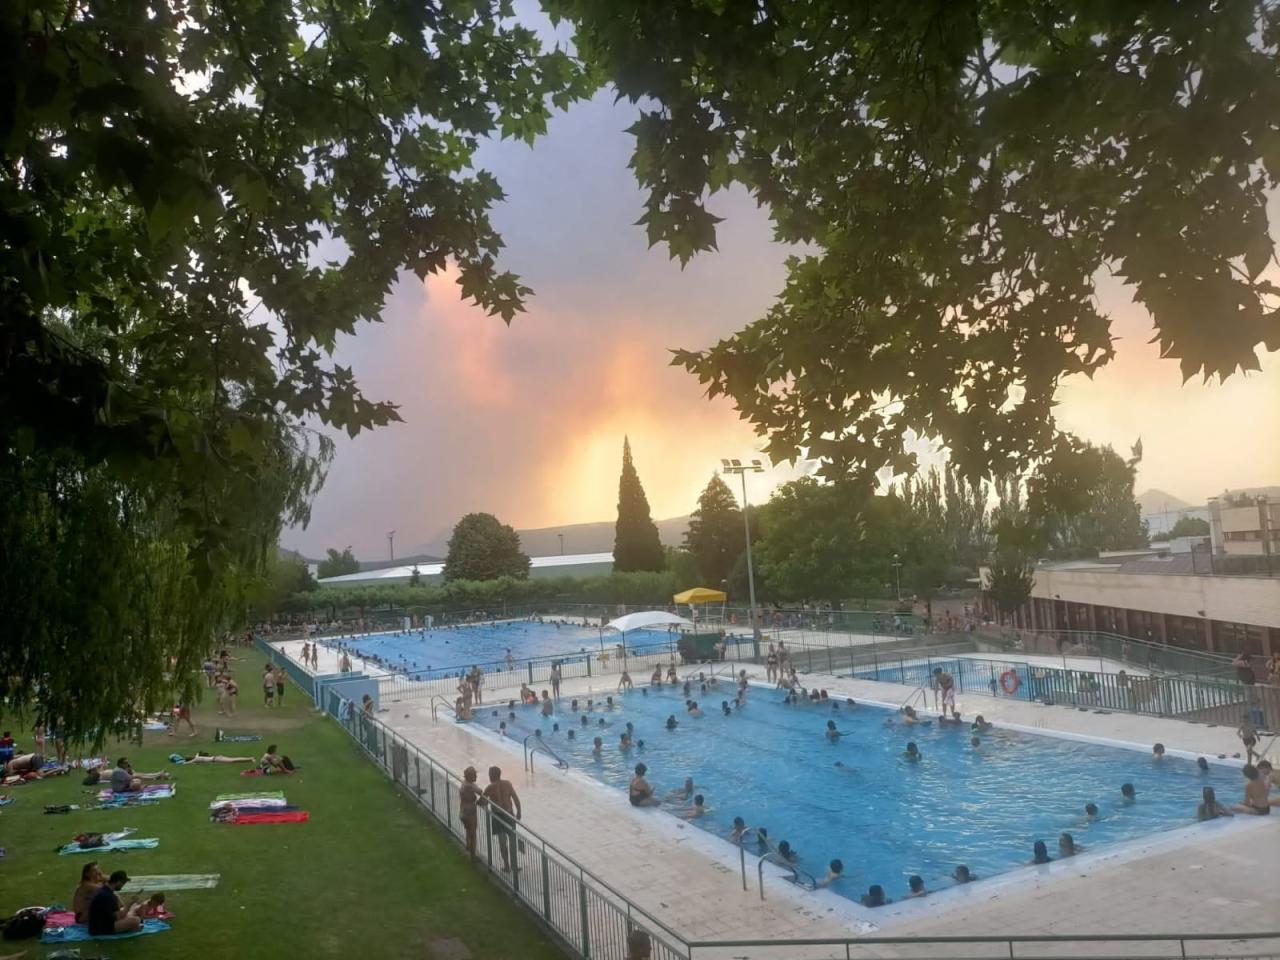 Imagen tomada desde la piscina municipal de Barañáin, Navarra, durante uno de los recientes incendios cerca de la zona. 